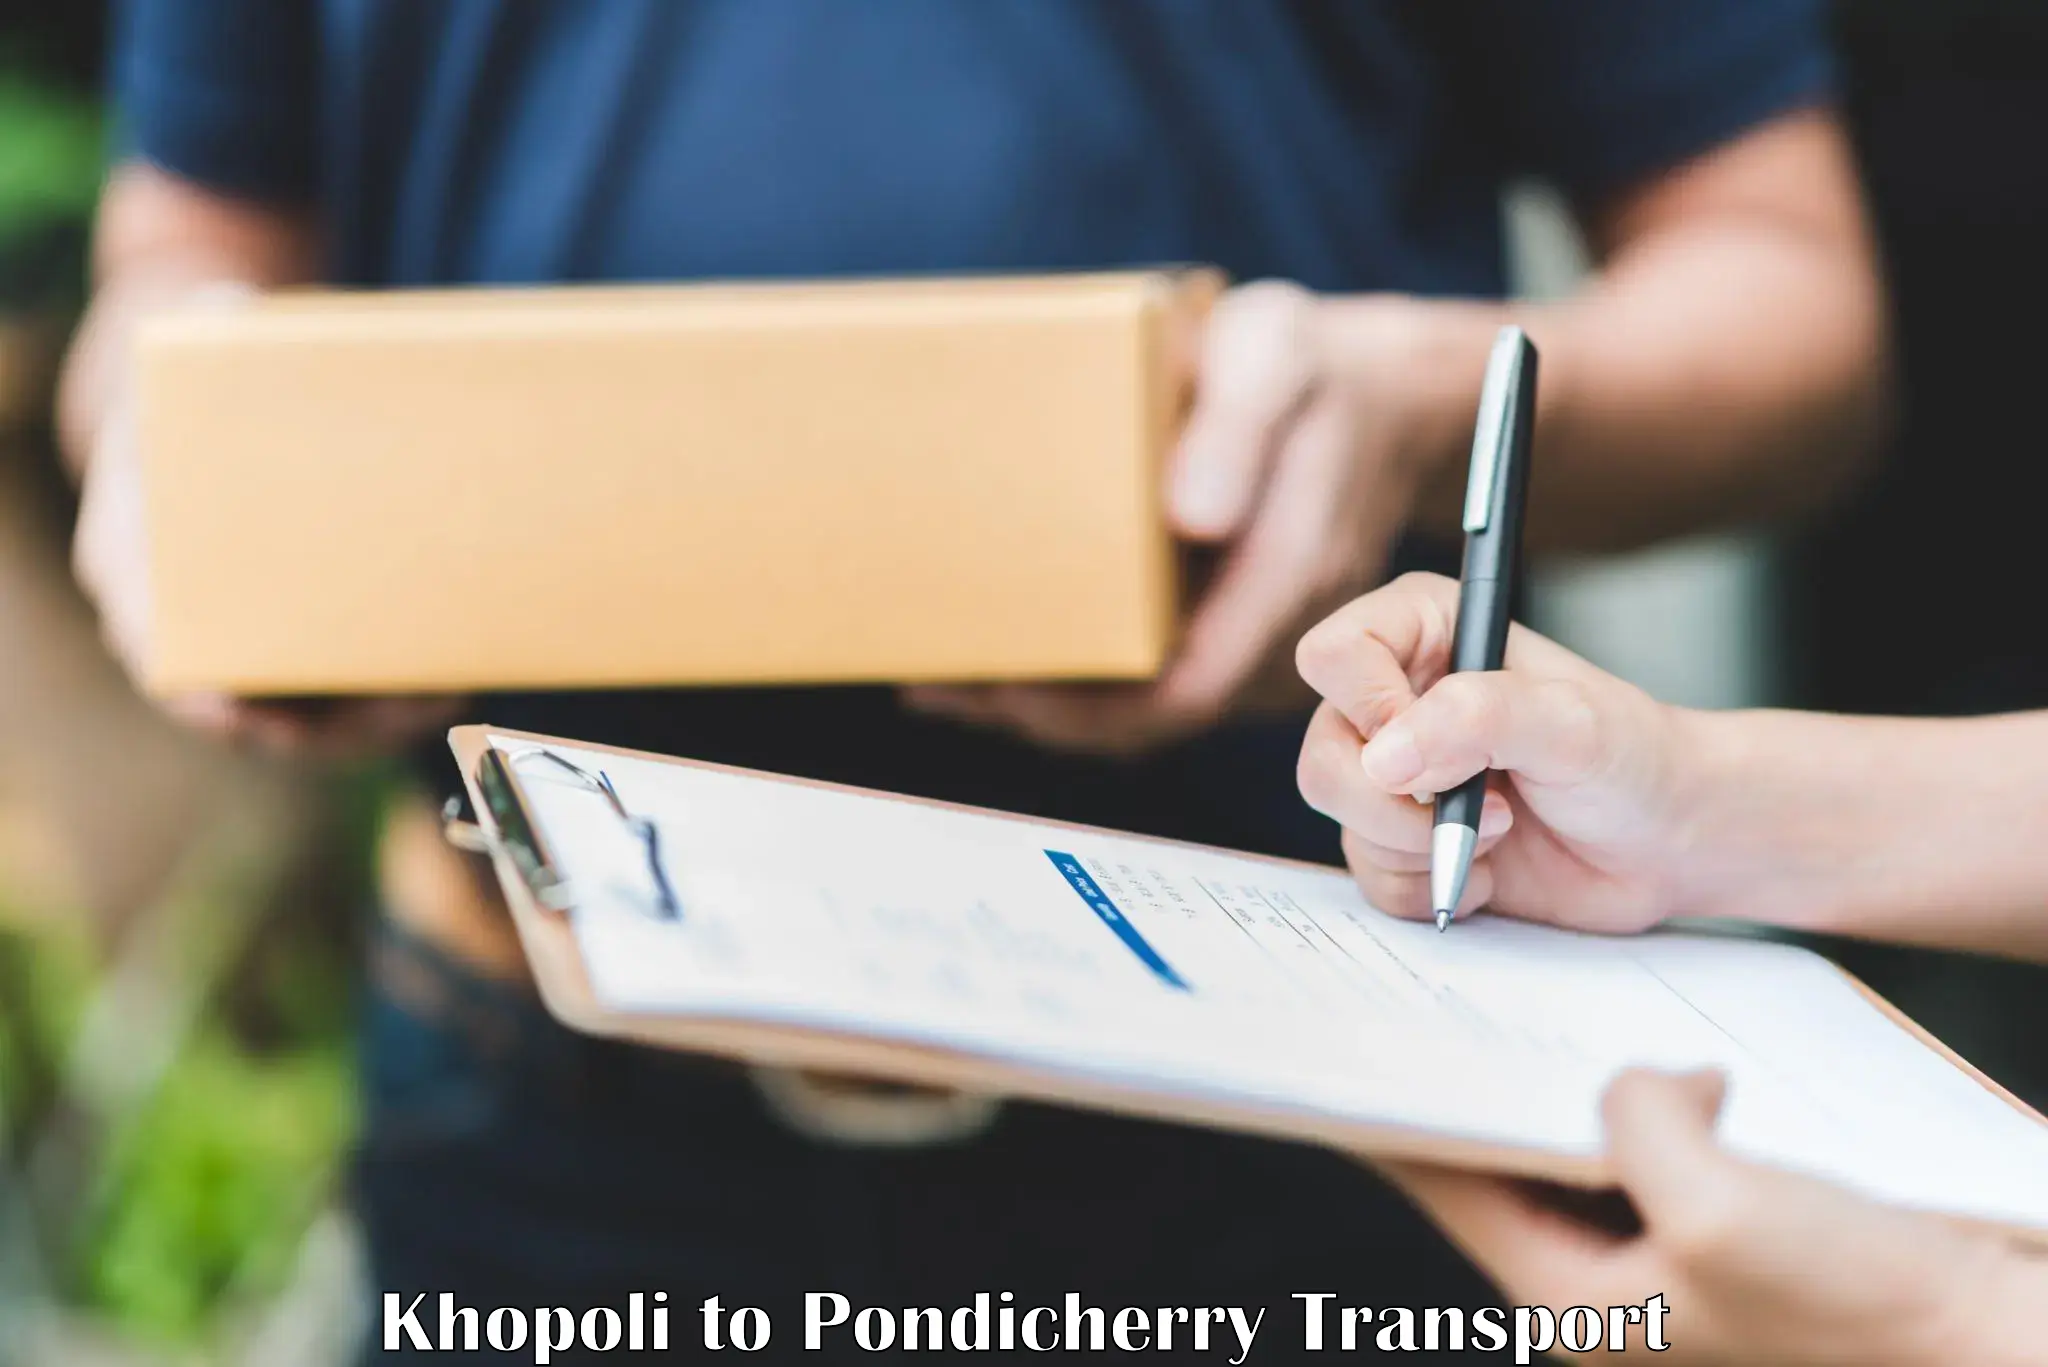 Transport services in Khopoli to Pondicherry University